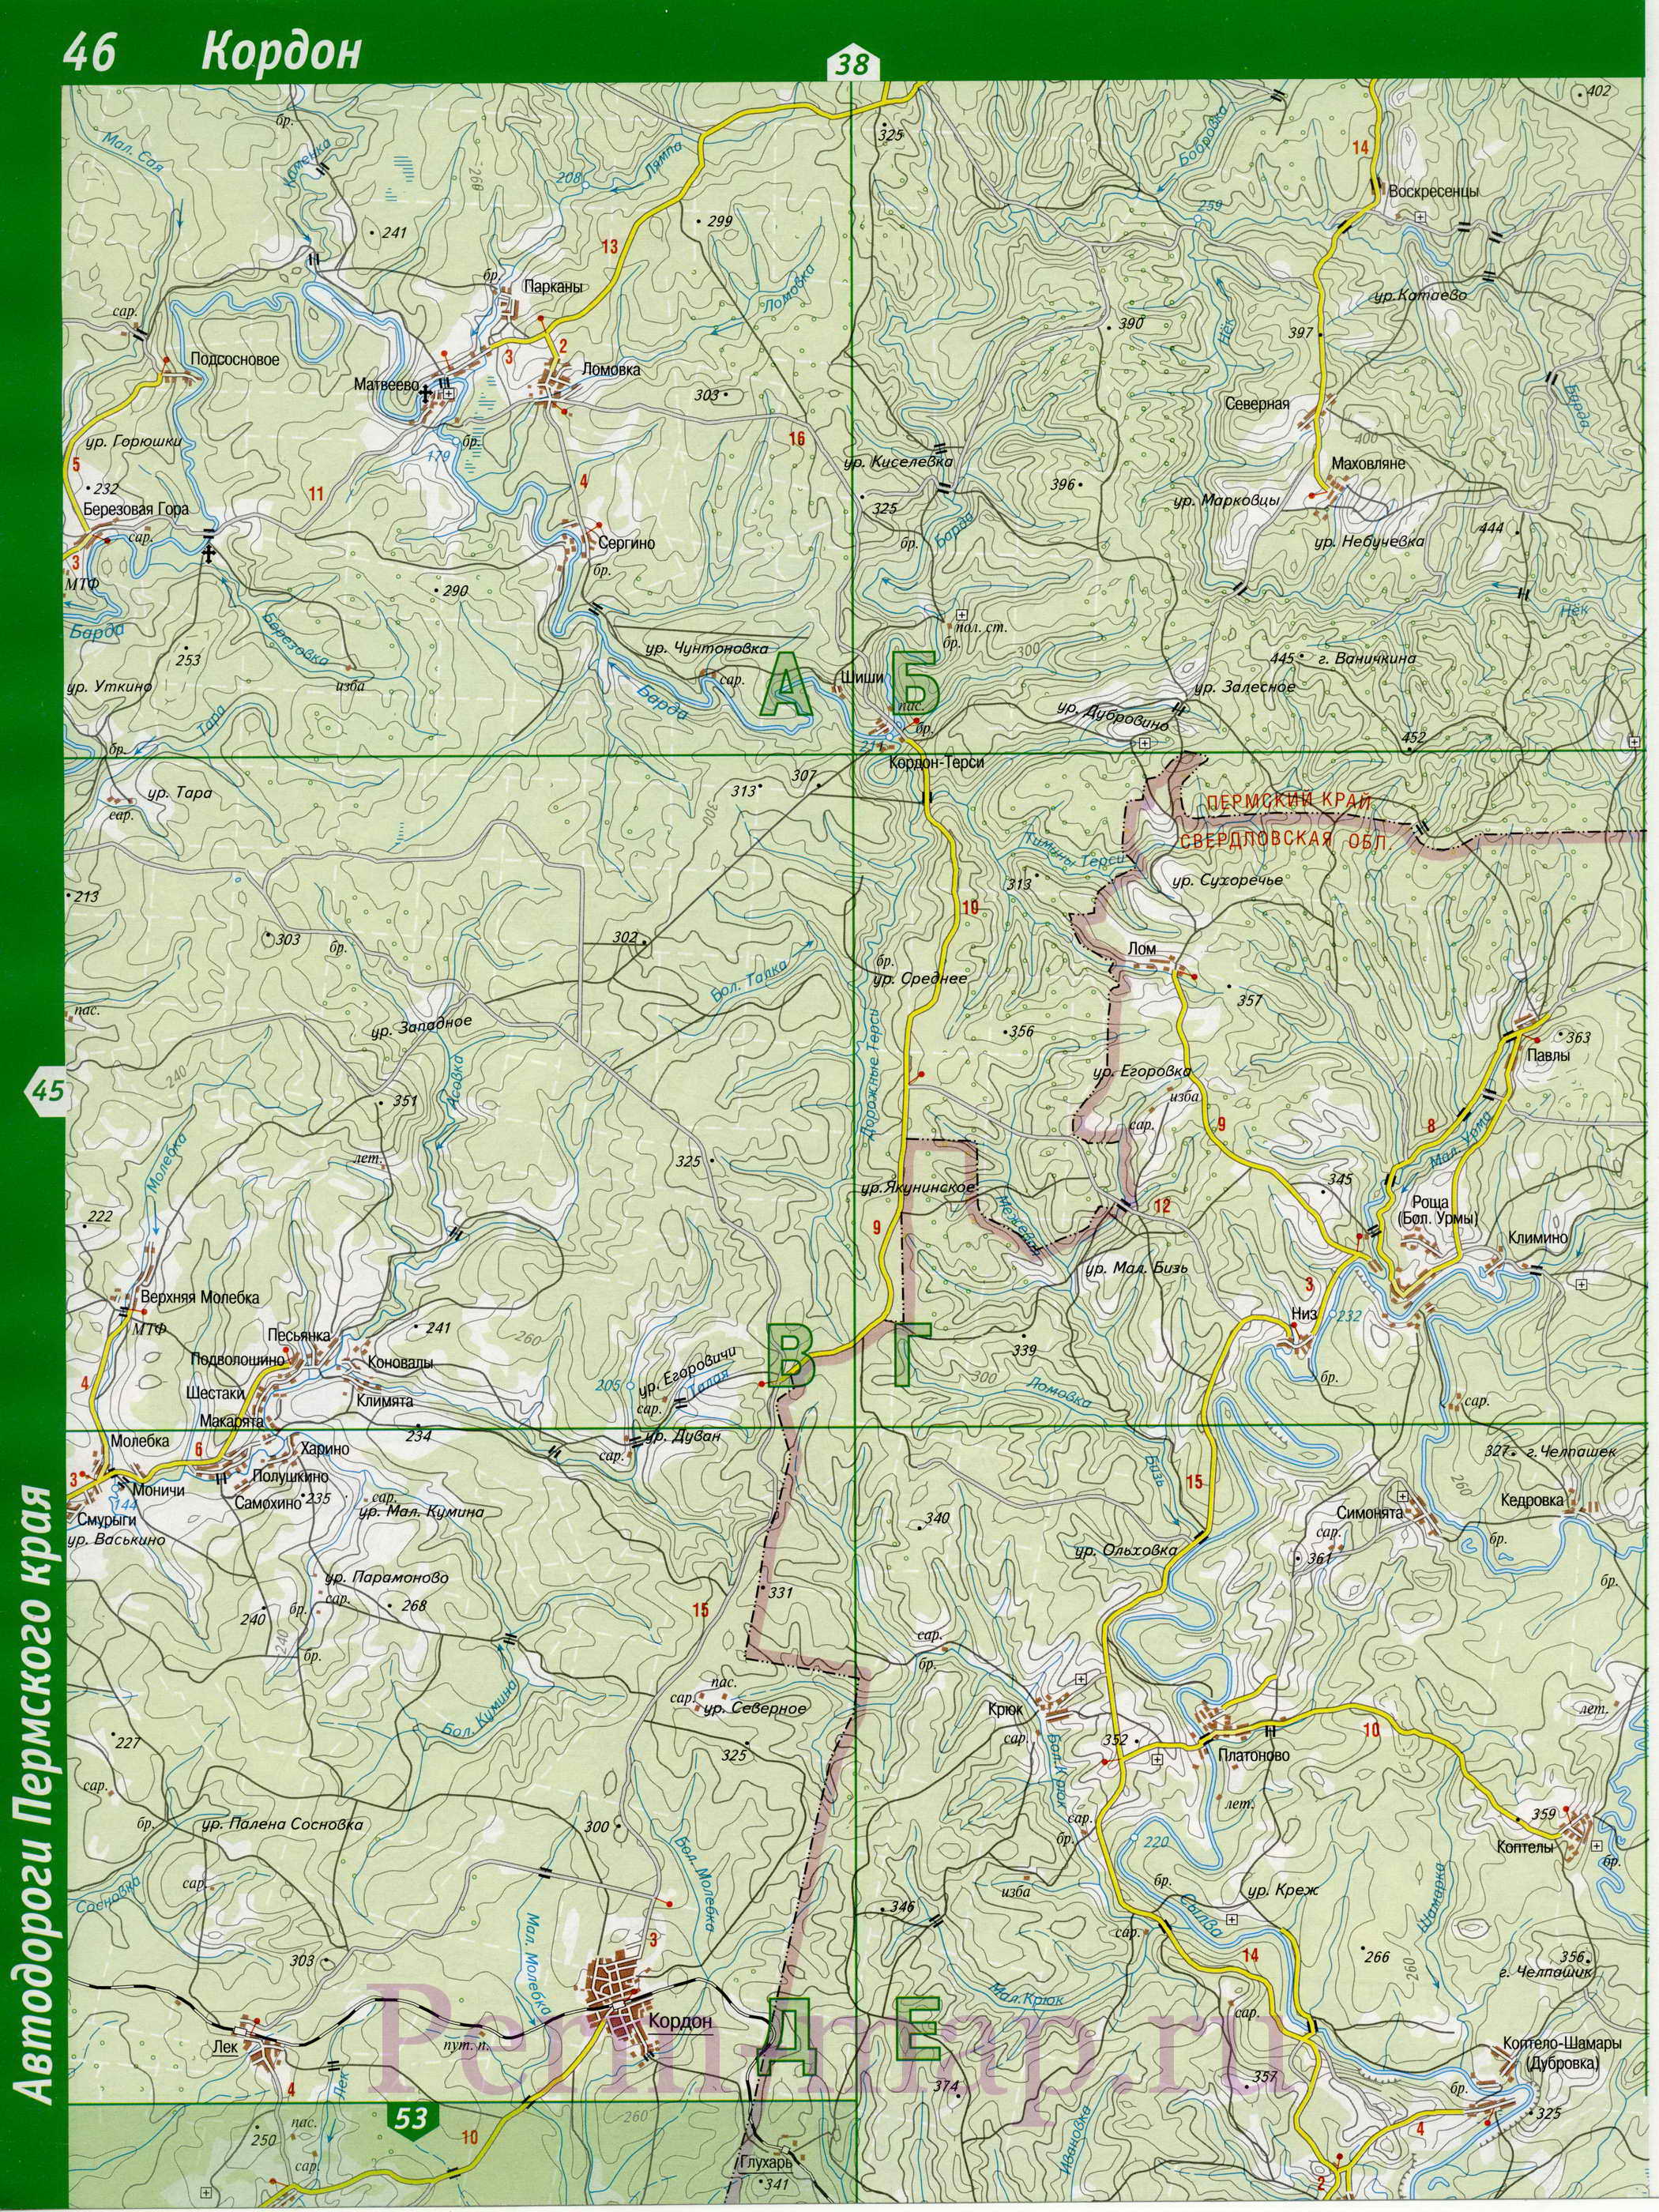 Лысьвенский район - топографическая карта. Подробная крупномасштабная карта Лысьвенского района, B1 - 